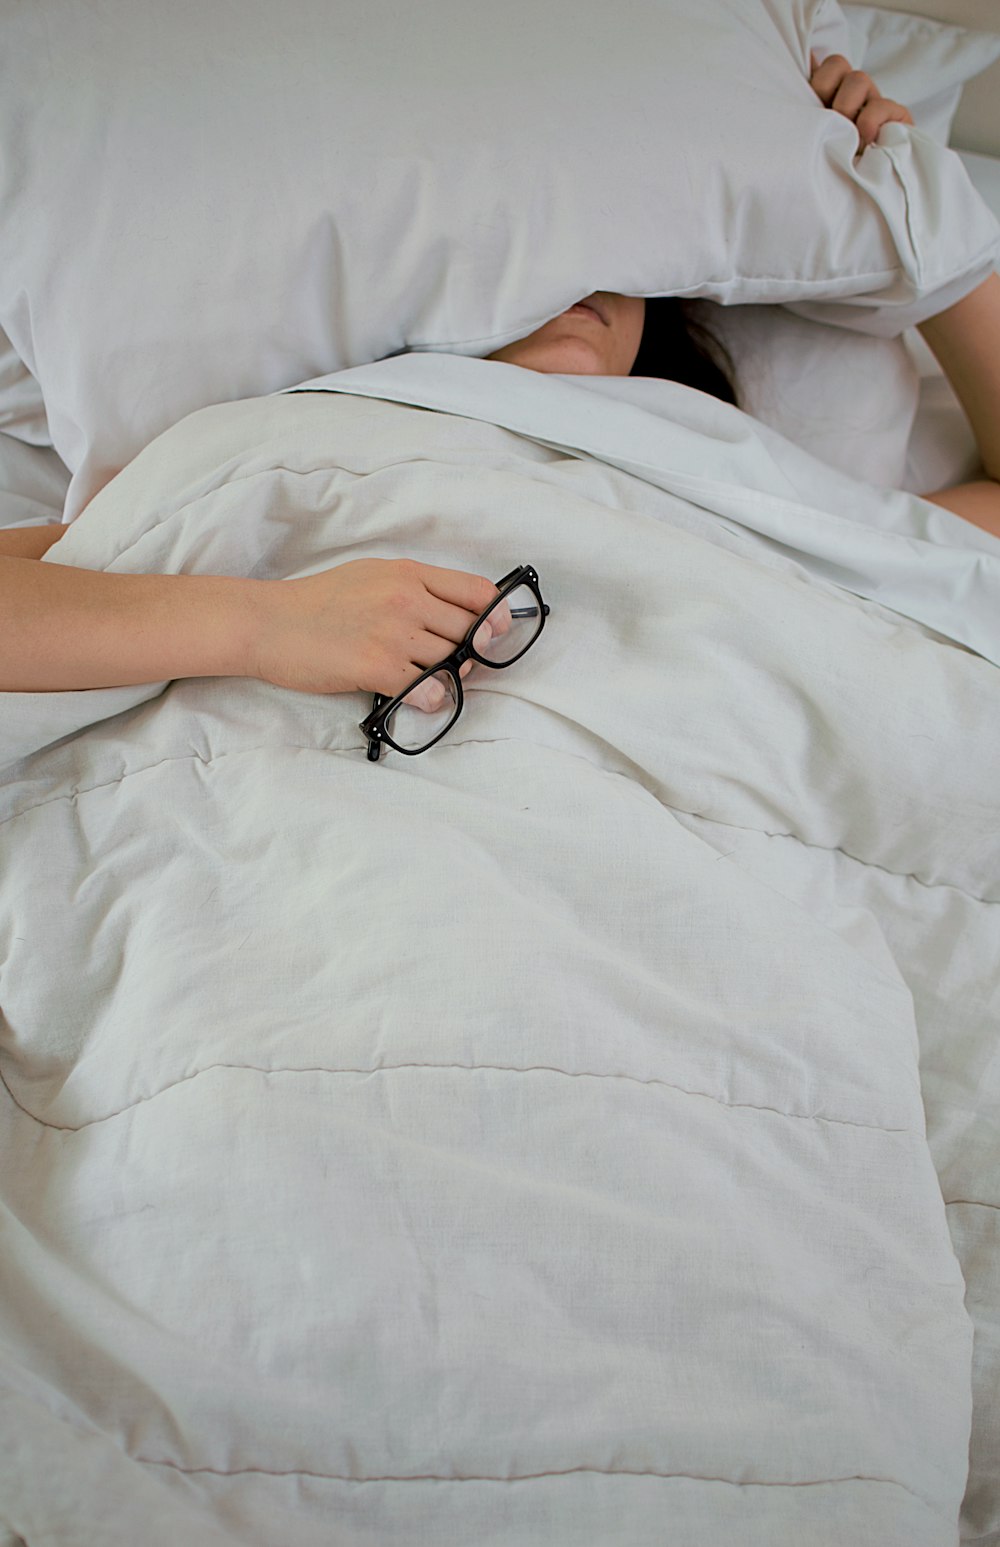 베개로 얼굴을 가리고 안경을 들고 침대에 누워있는 사람